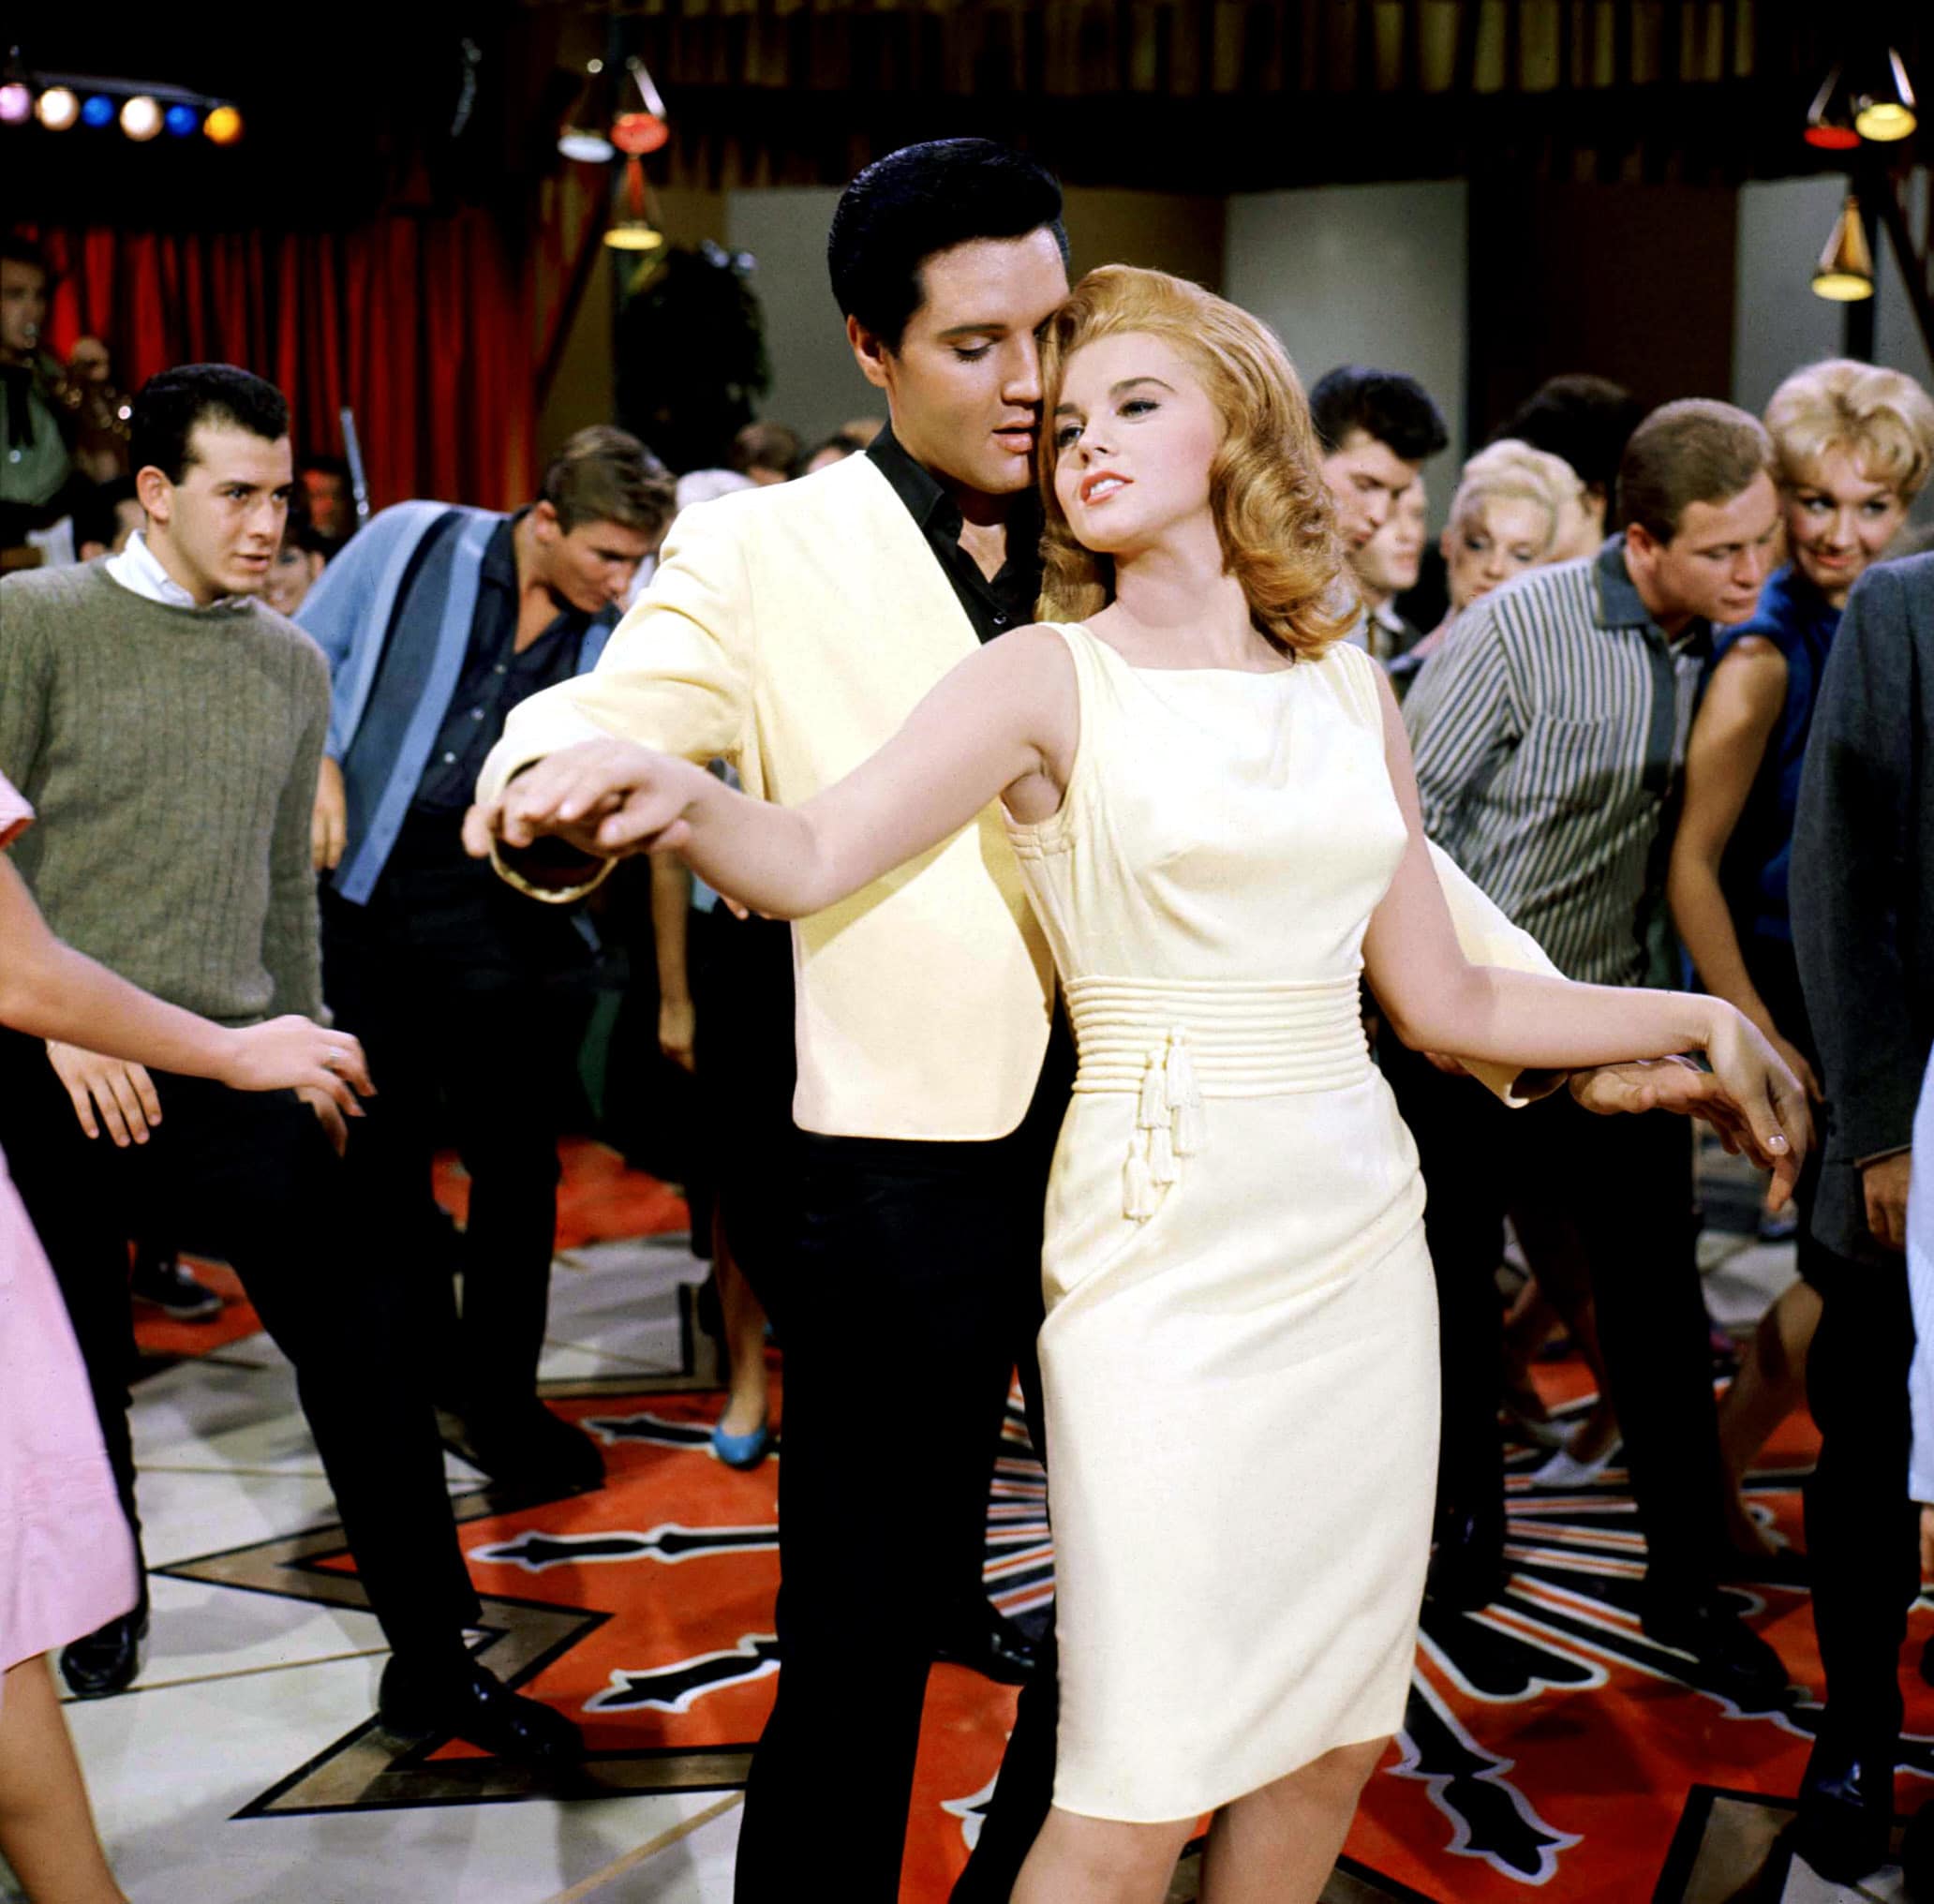 VIVA LAS VEGAS, Elvis Presley, Ann-Margret, 1964